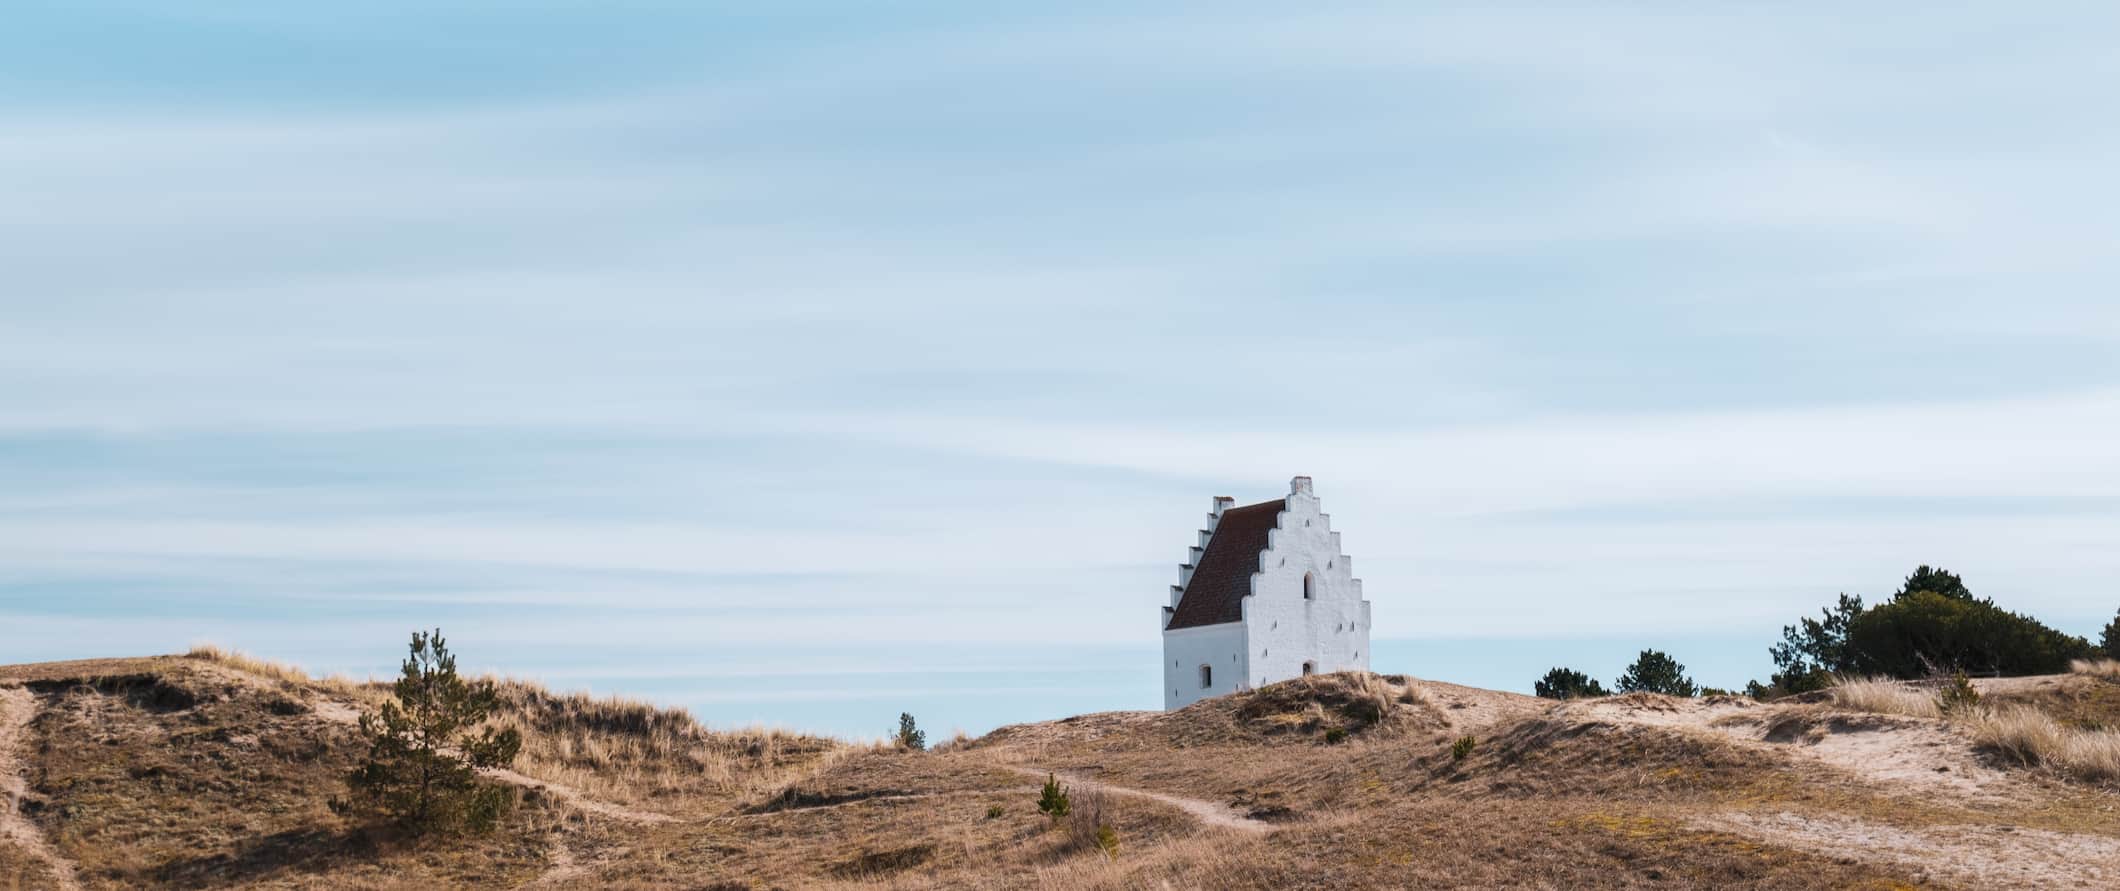 一座白色的小教堂，坐落在丹麦日德兰半岛崎岖、狂风肆虐的海岸上